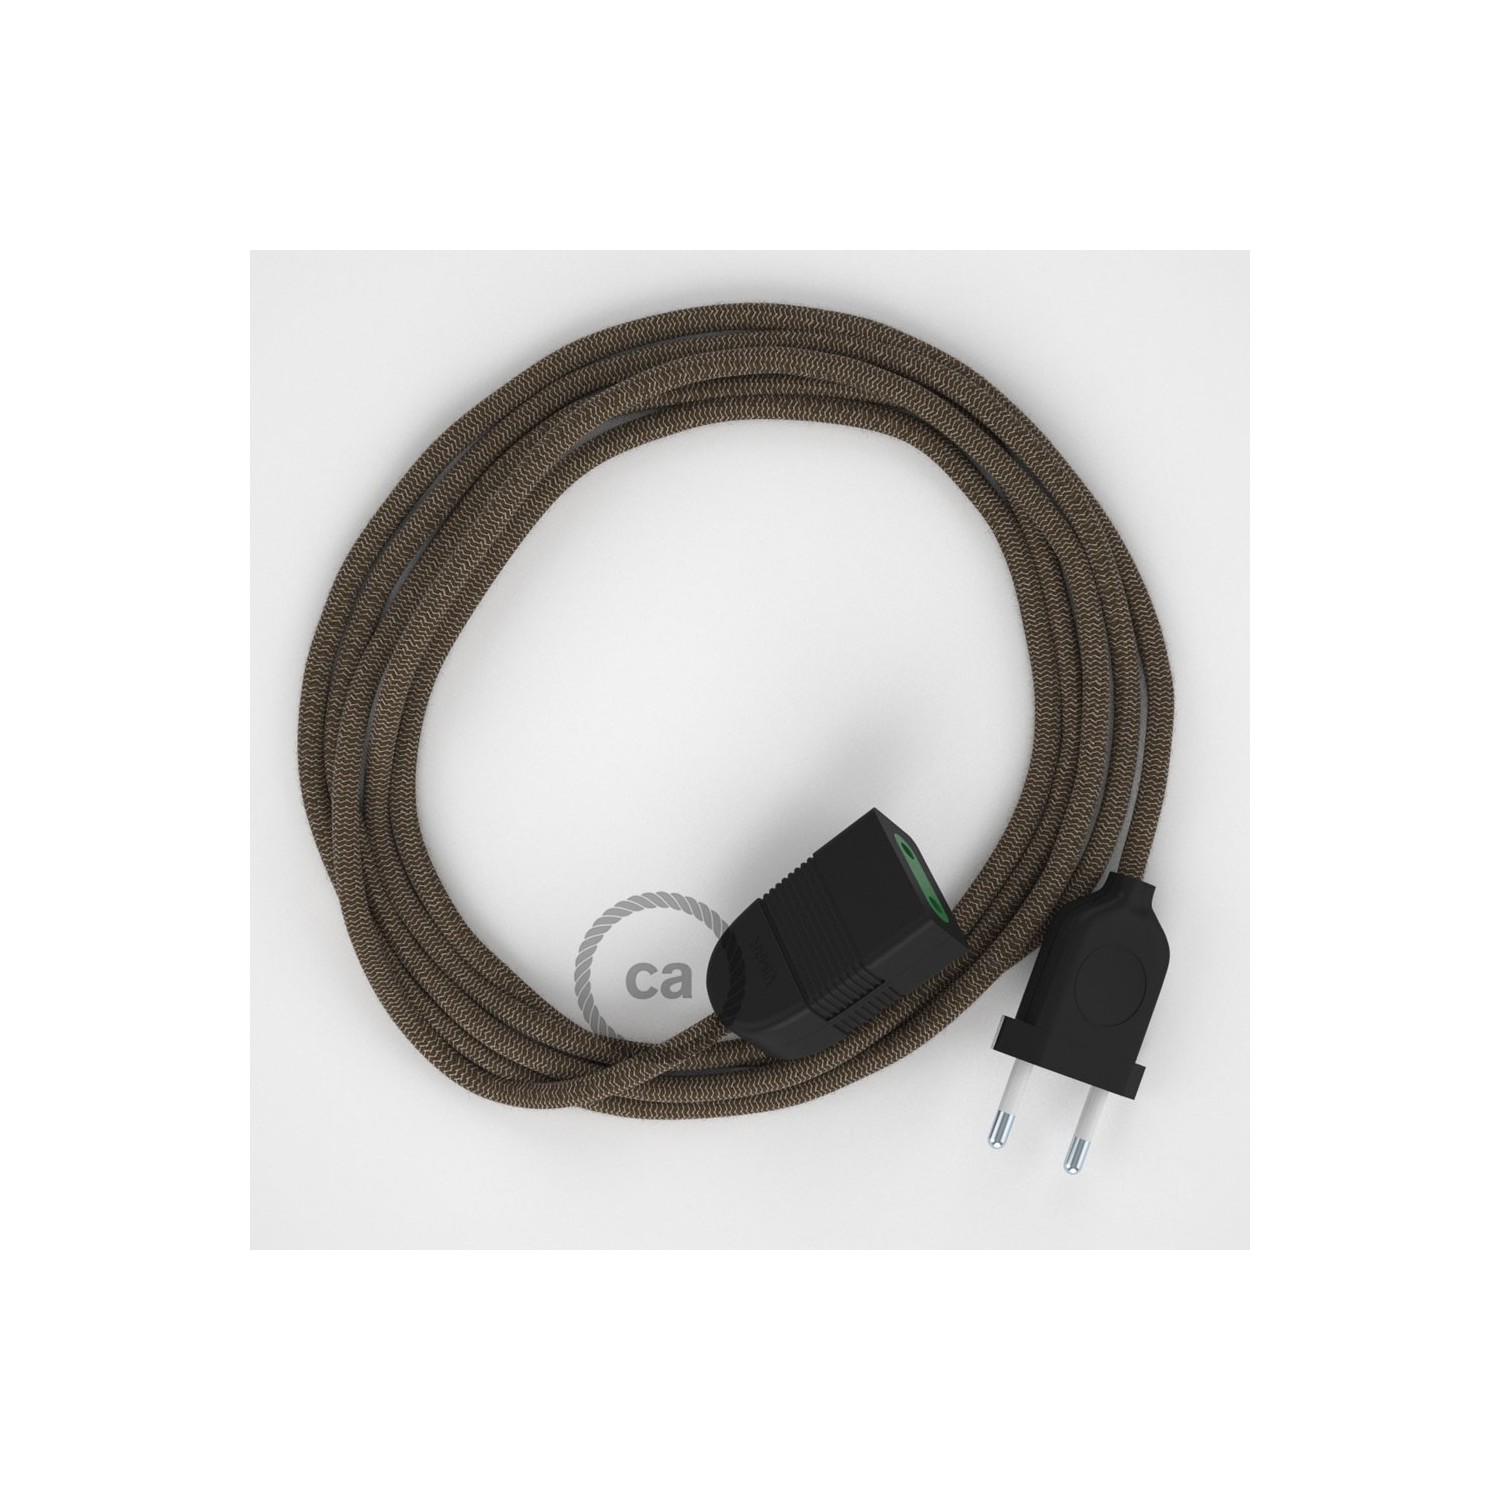 Podaljševalni kabel za napajanje (2P 10A) zigzag "lubje" naravni lan in bombaž RD73 - Made in Italy